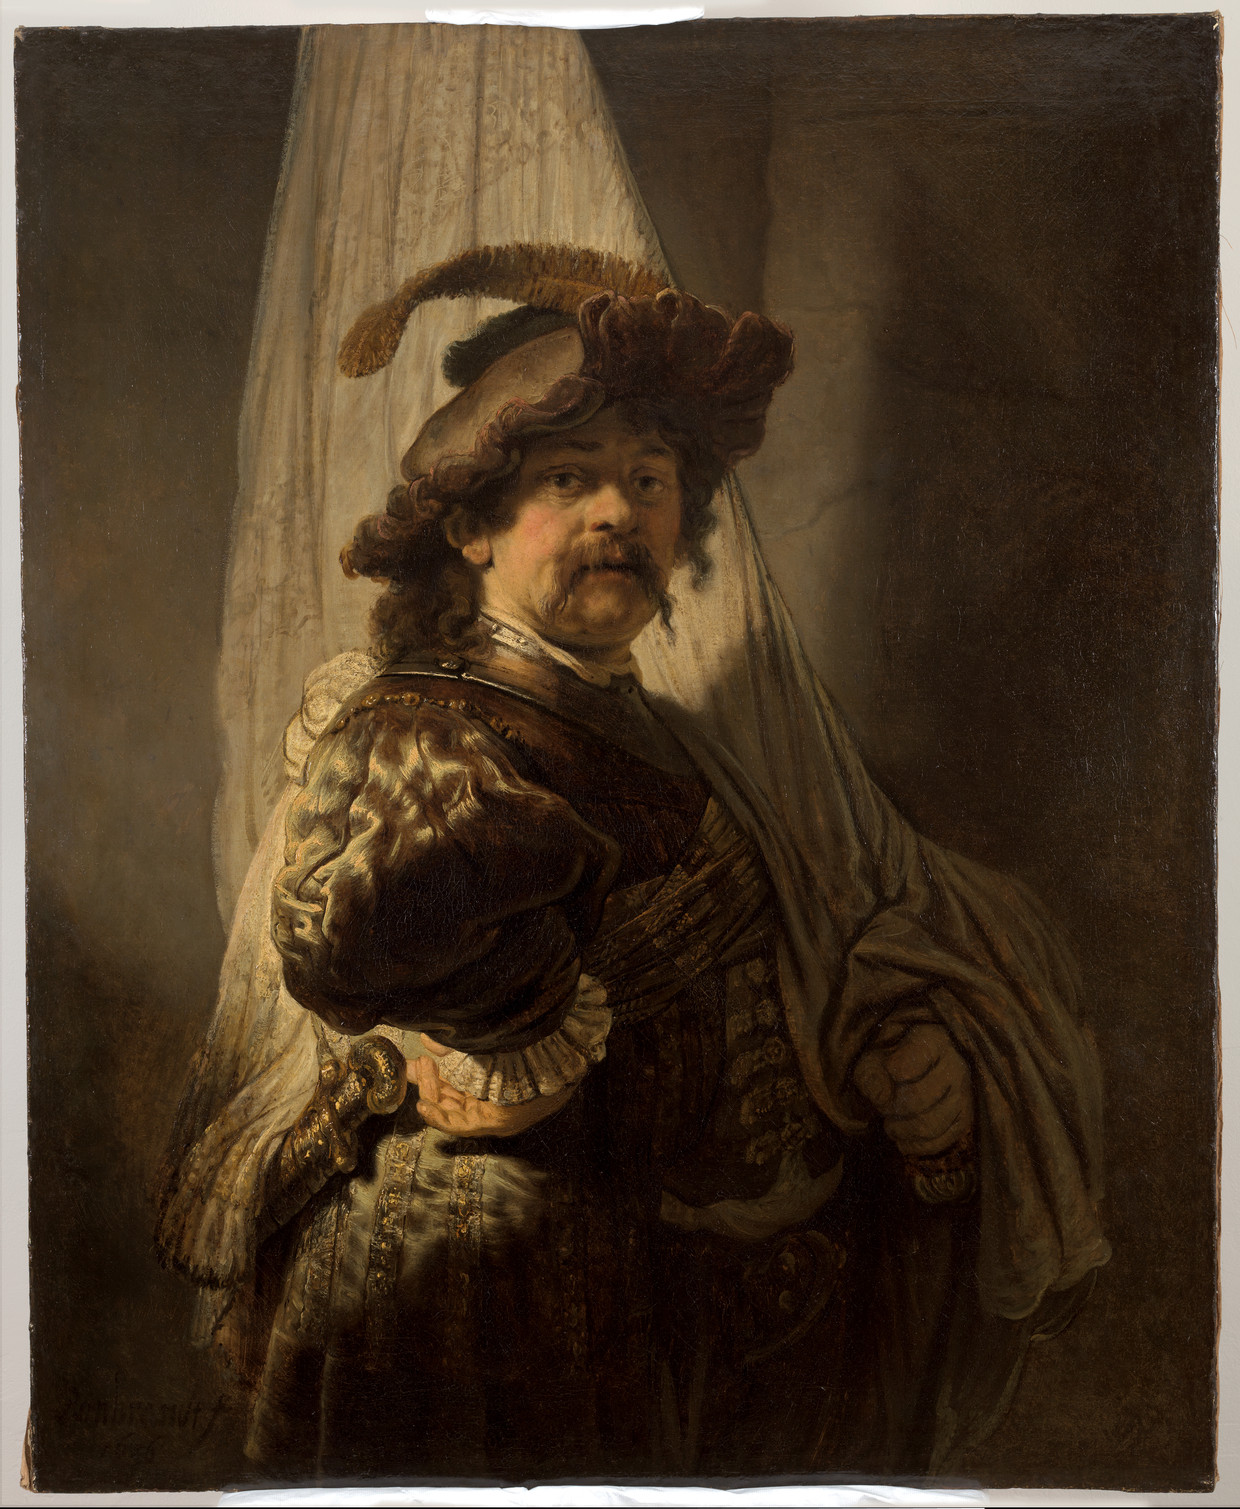 Rembrandt van Rijn, ‘De vaandeldrager’ (1636). Olieverf op doek, 118,8 x 96,8 cm, collectie Rothschild. Beeld Rijksmuseum